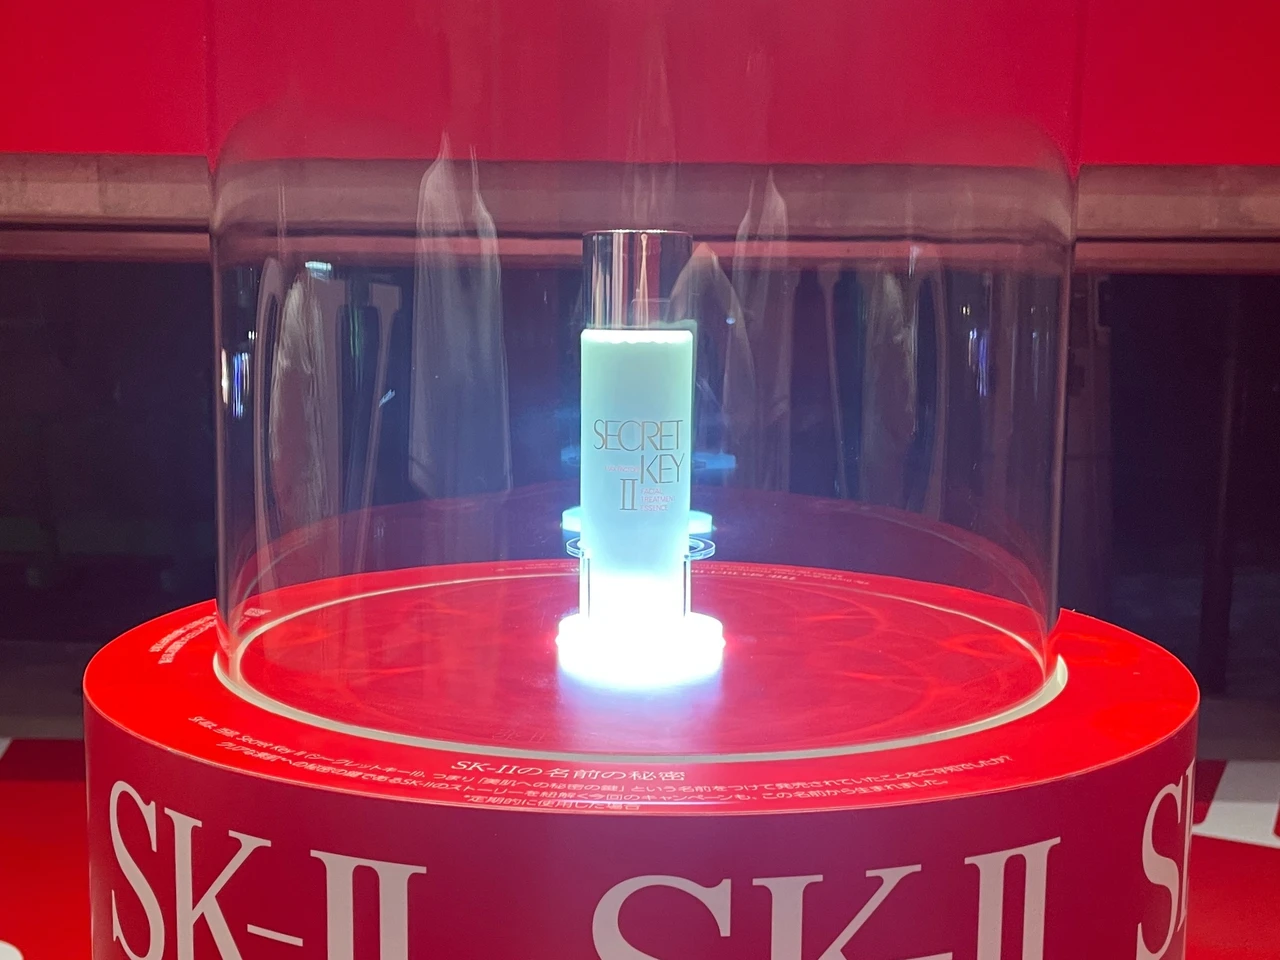 SK-Ⅱの化粧水「ピテラ™」で揺らぎやすい肌のコンディションを整える